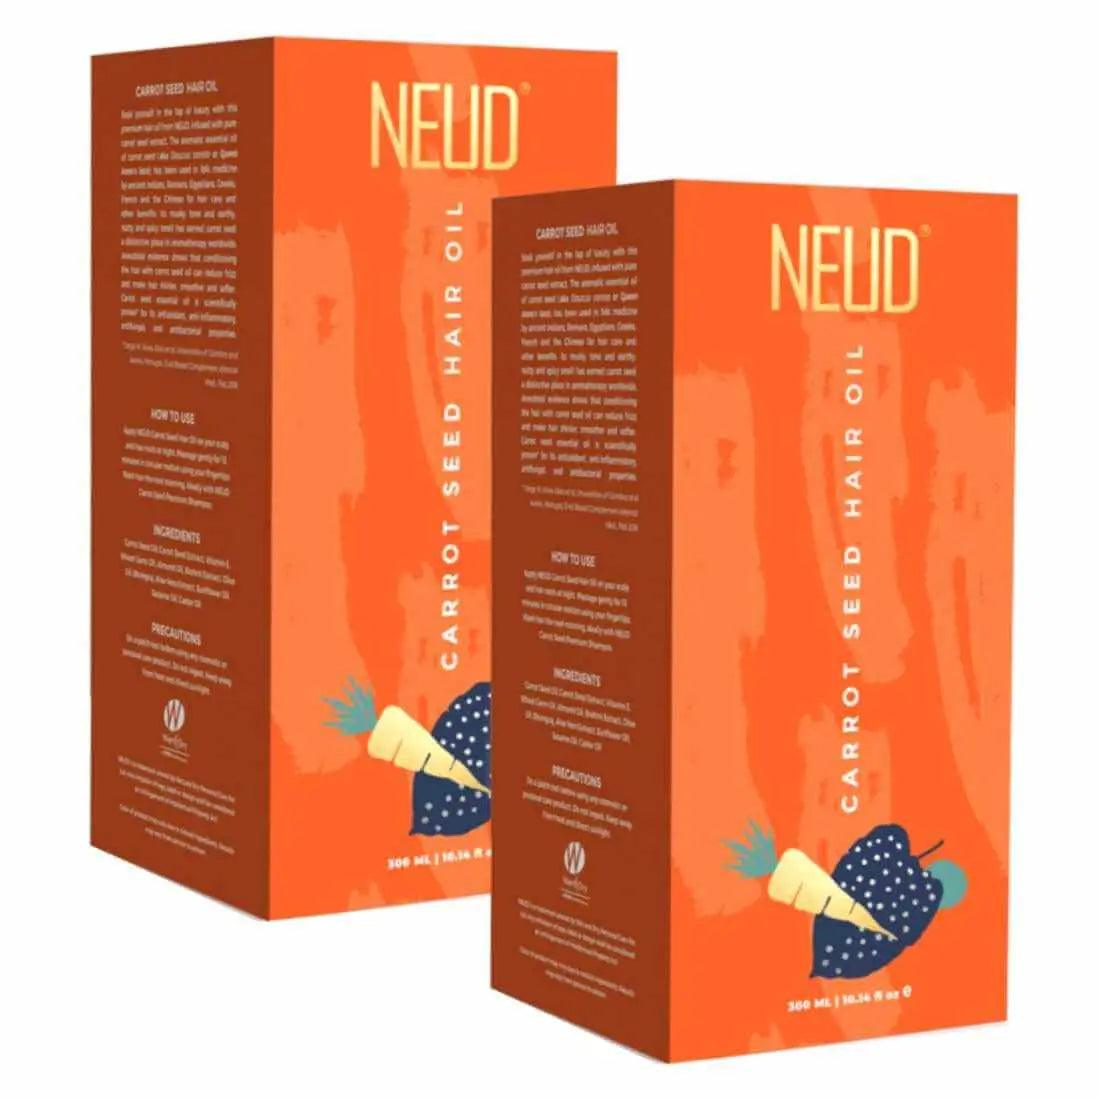 NEUD Carrot Seed Premium Hair Oil for Men & Women - 300ml 9559682300300